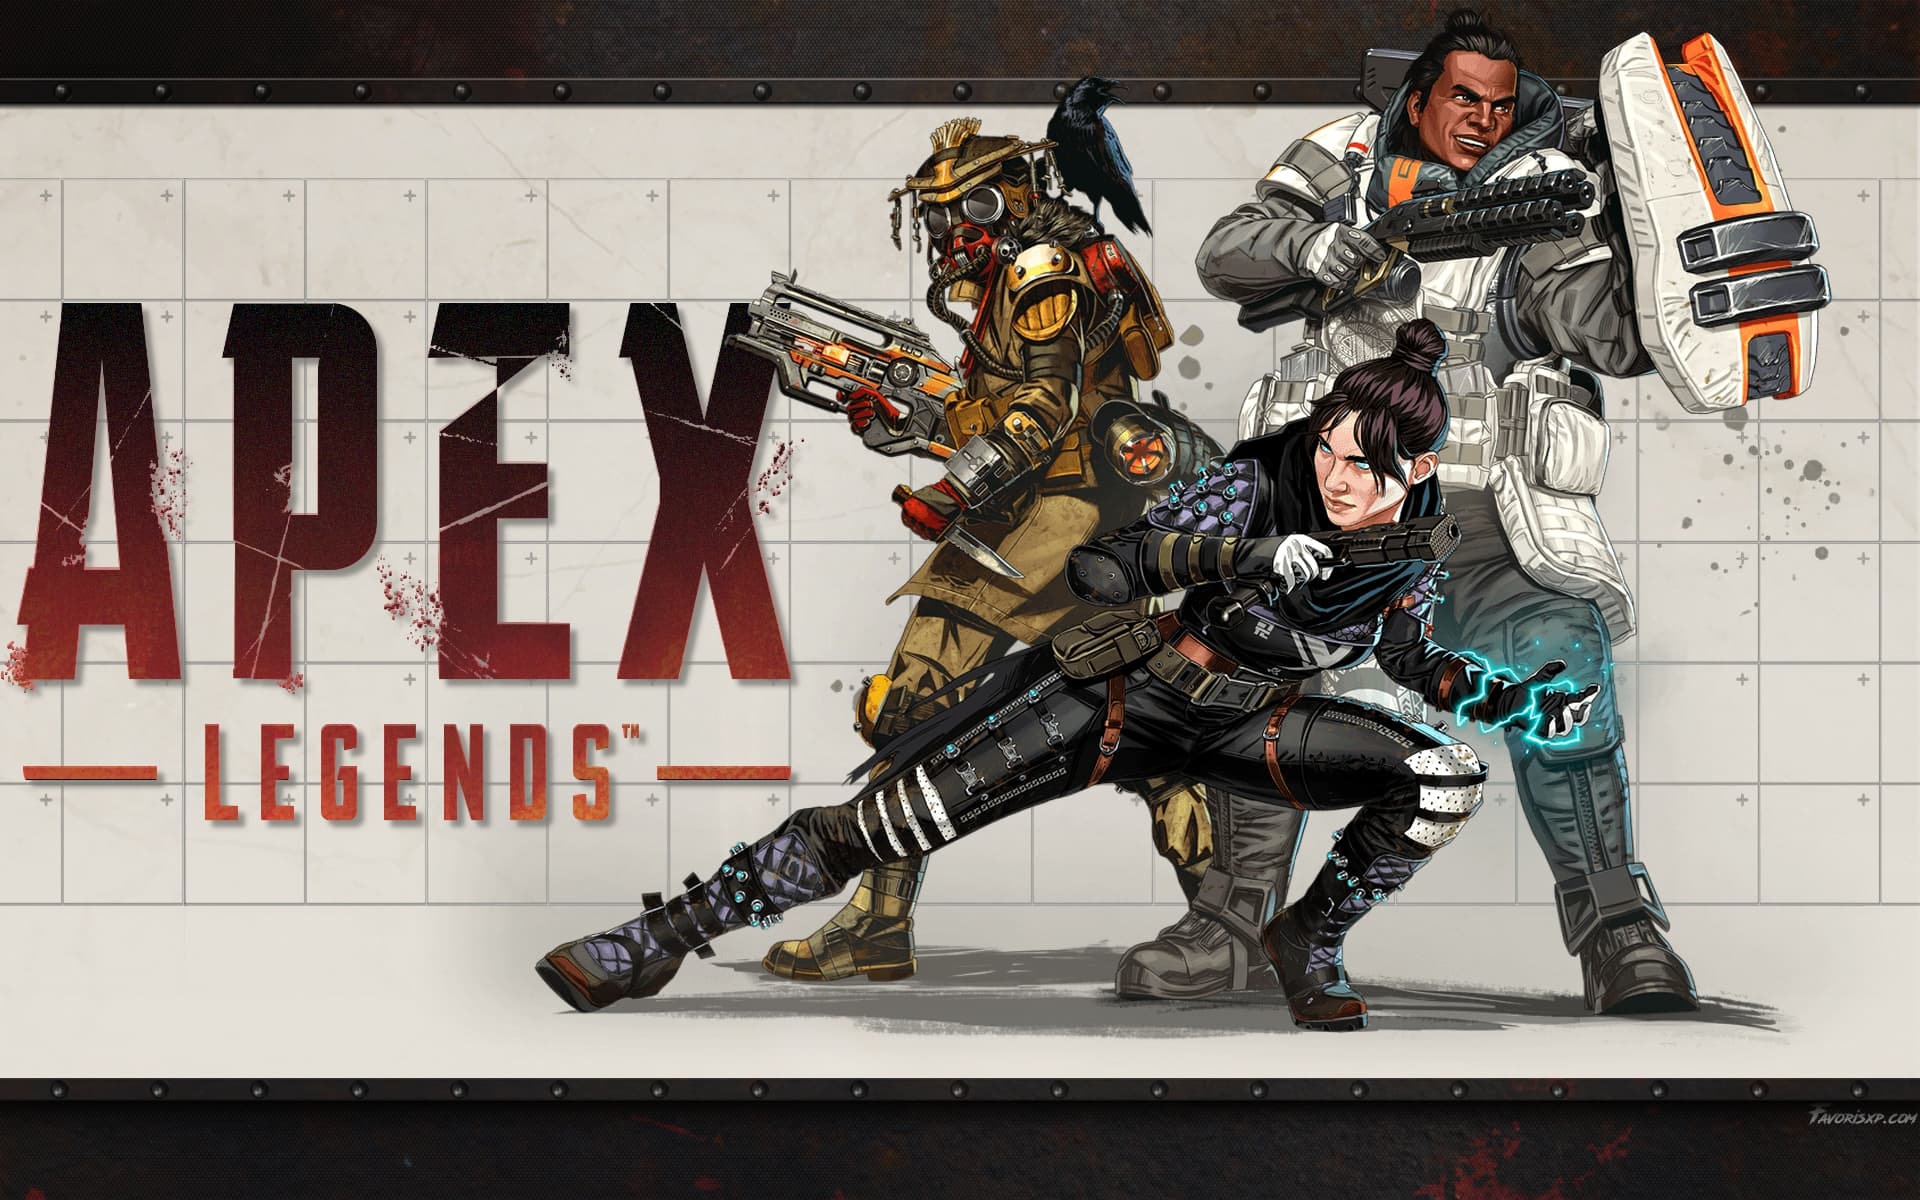 Personnages du Jeu Vidéo Apex Legends | Image de Fond d'écran pour PC.